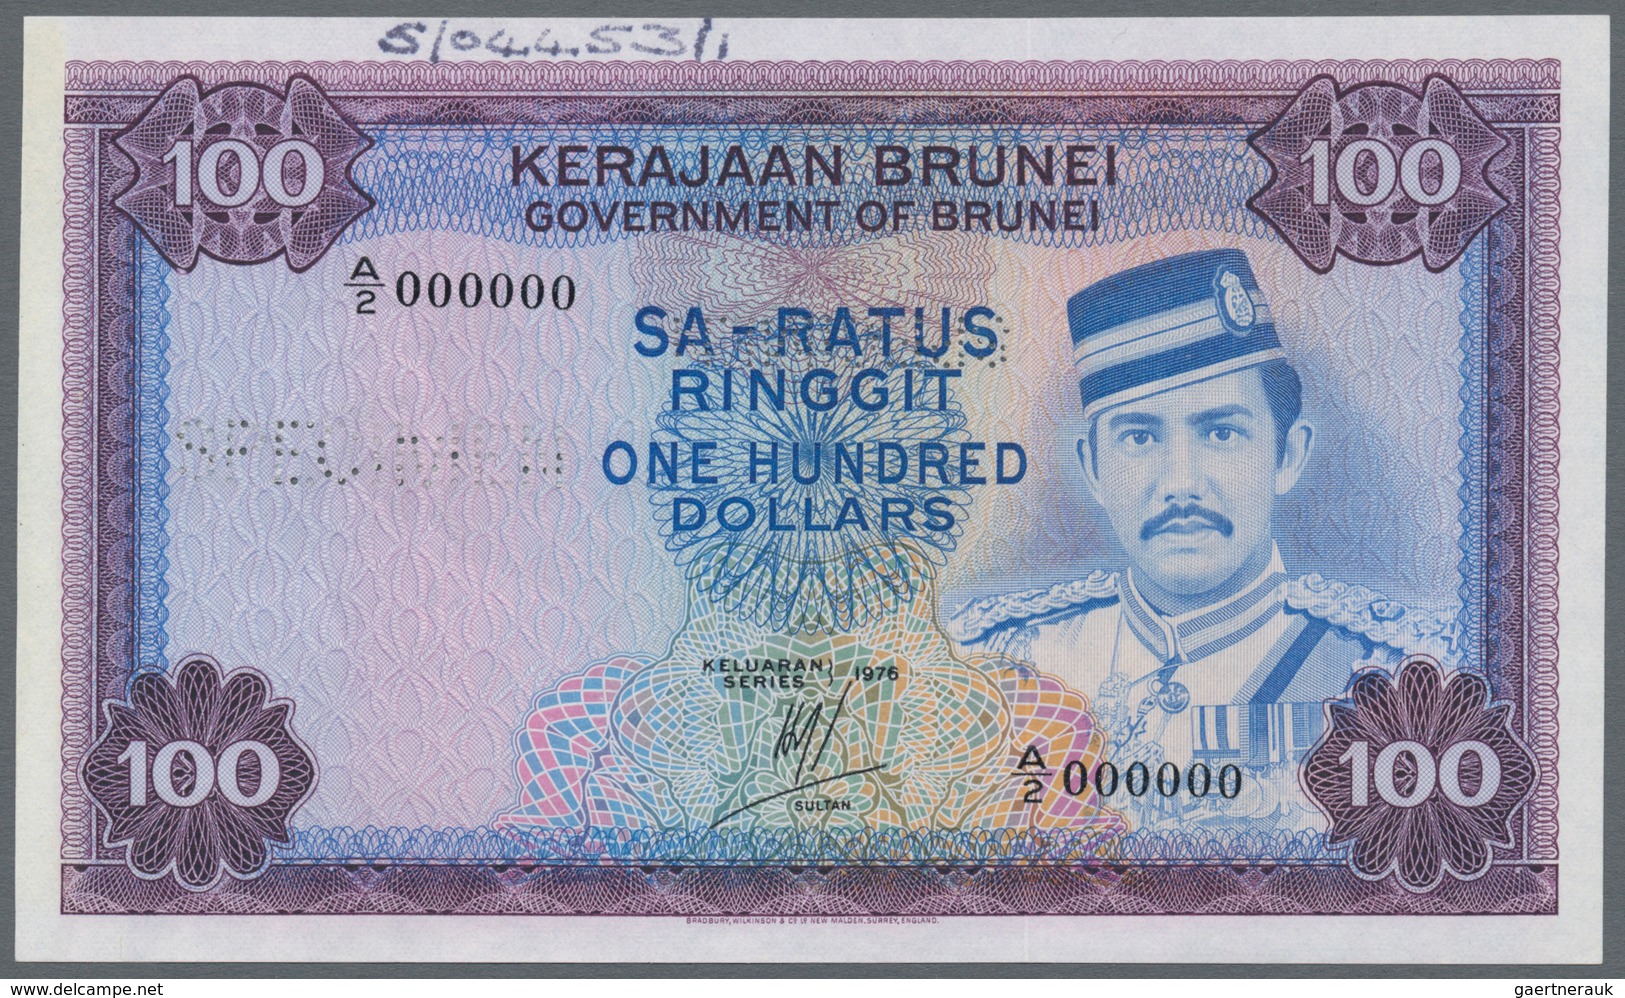 Brunei: Government Of Brunei 100 Ringgit 1976 SPECIMEN, P.10as With Perforation "Specimen" And Seria - Brunei